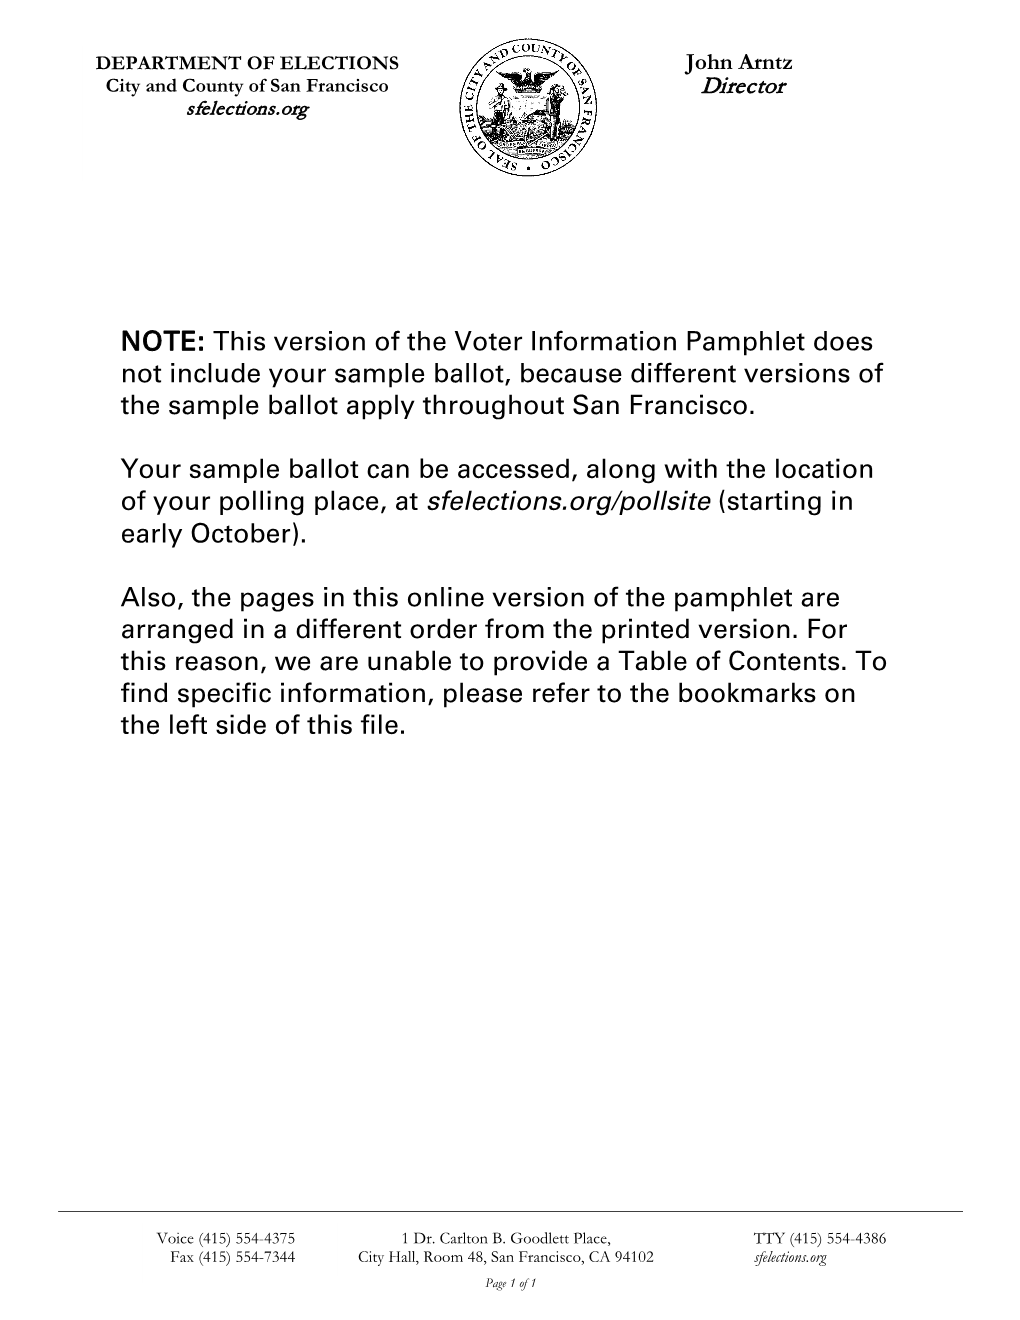 Voter Information Pamphlet: November 4, 2014